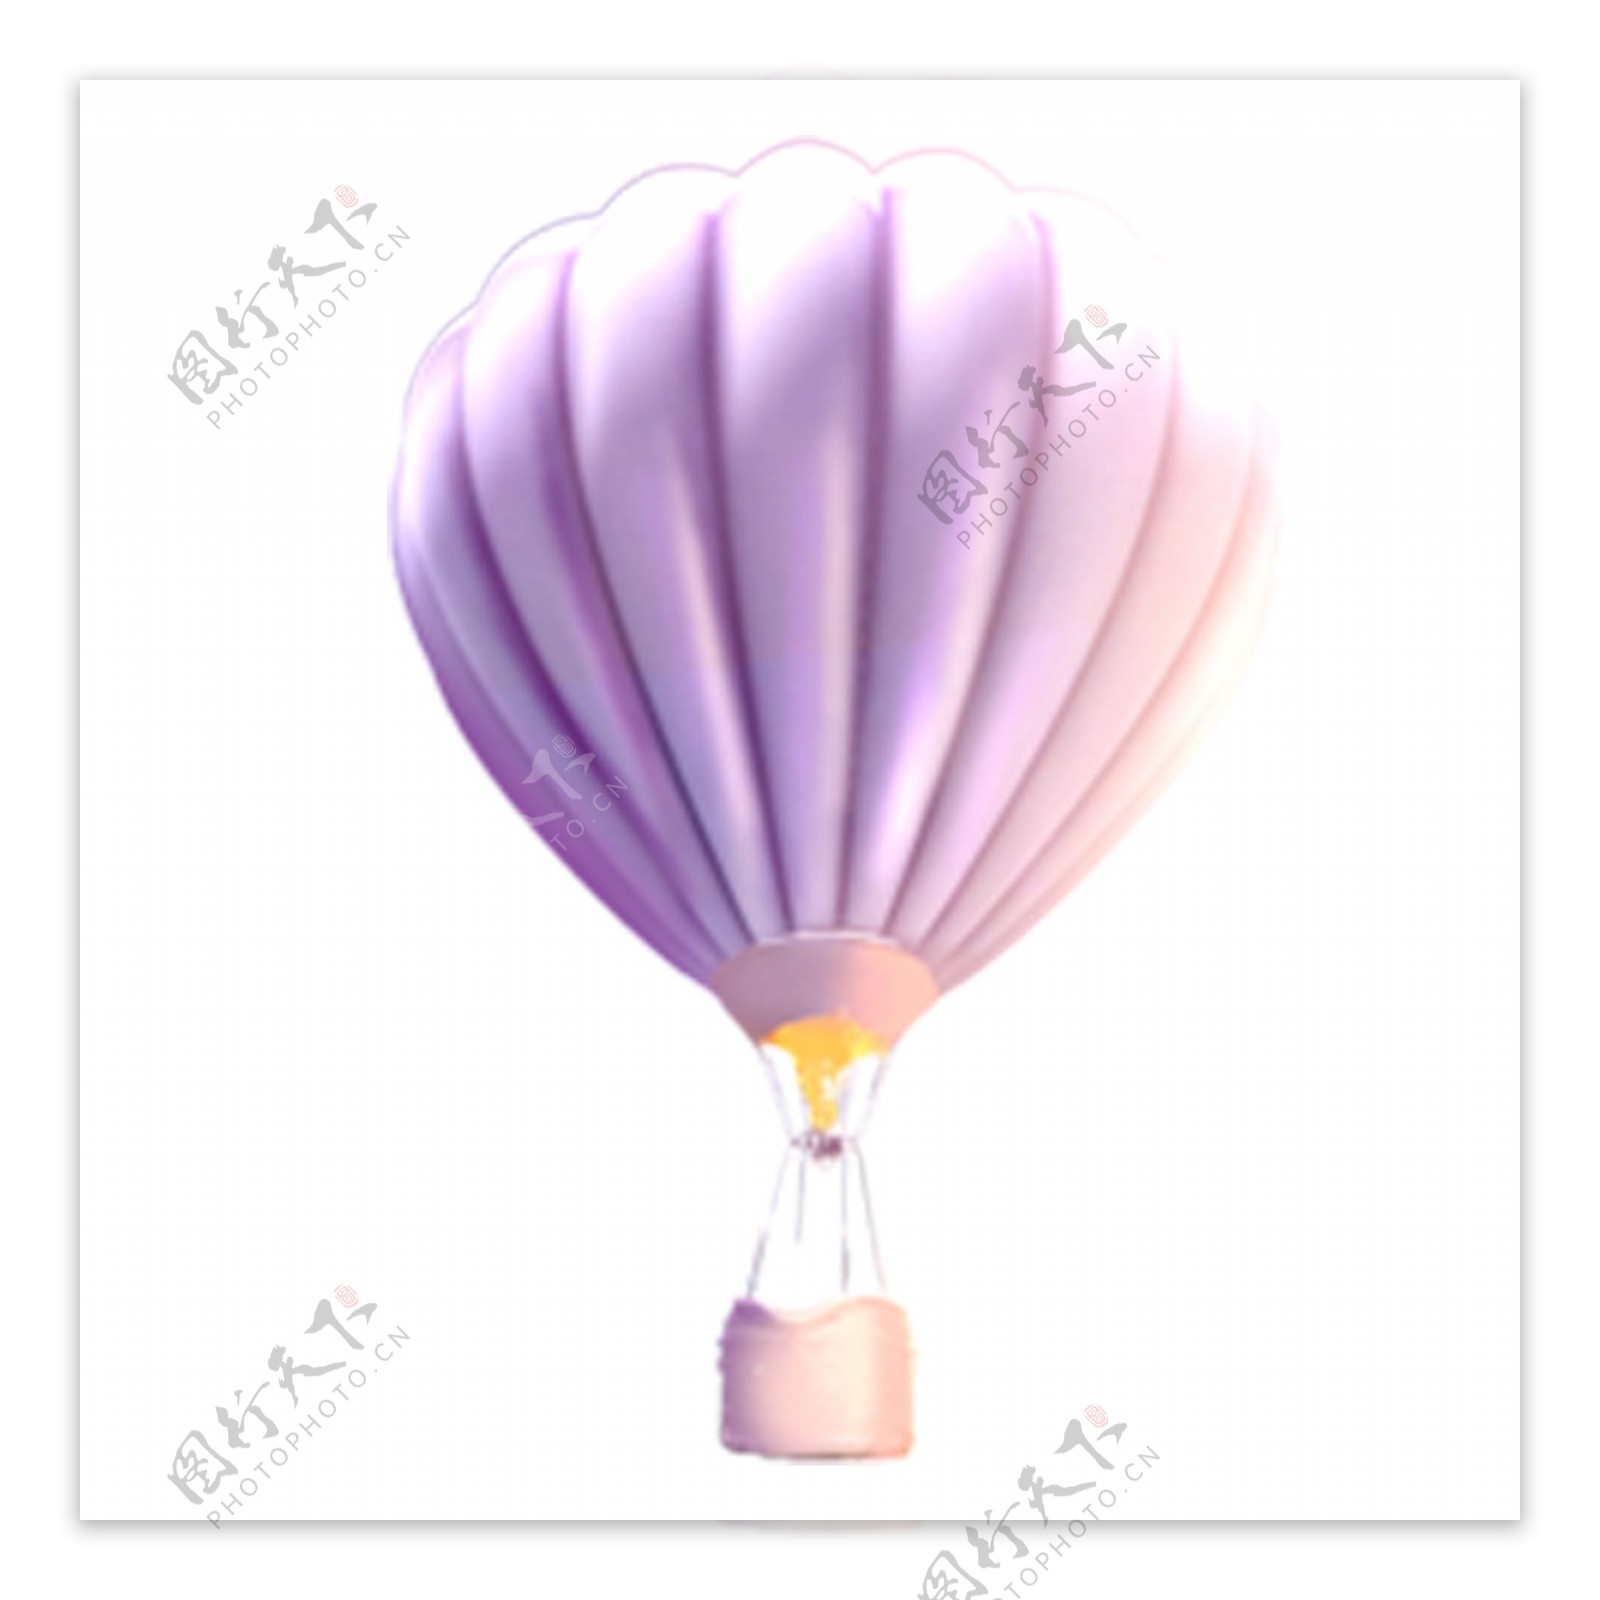 浪漫紫色热气球装饰元素